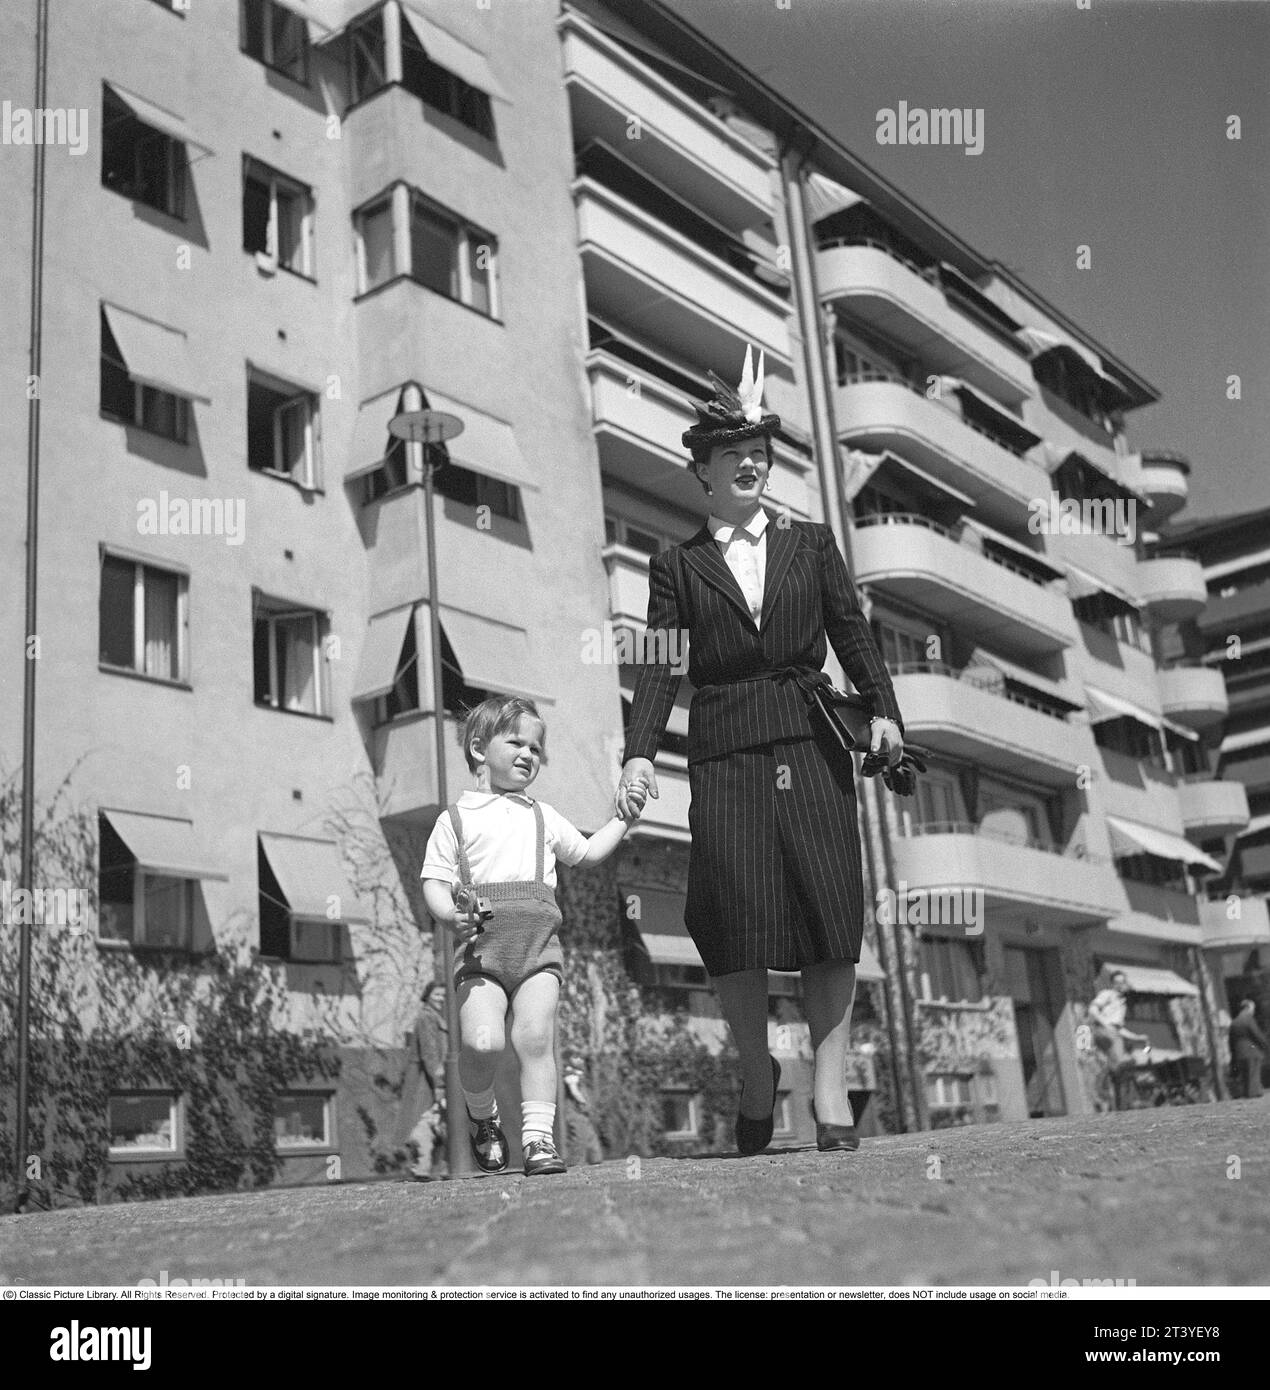 Einen Tag im Mai 1940. Eine Mutter hält ihren Sohn in der Hand, während sie auf einer Straße in Stockholm spaziert. Im Hintergrund ein Wohnhaus und Wohnungen. Sie ist in typischer 40er-Mode gekleidet. Ein Kleid mit Kreidestreifen, passendem Rock, Jacke und wunderschöner Hut. Schweden Stockholm Mai 1940. Kristoffersson Ref. 133-21 Stockfoto